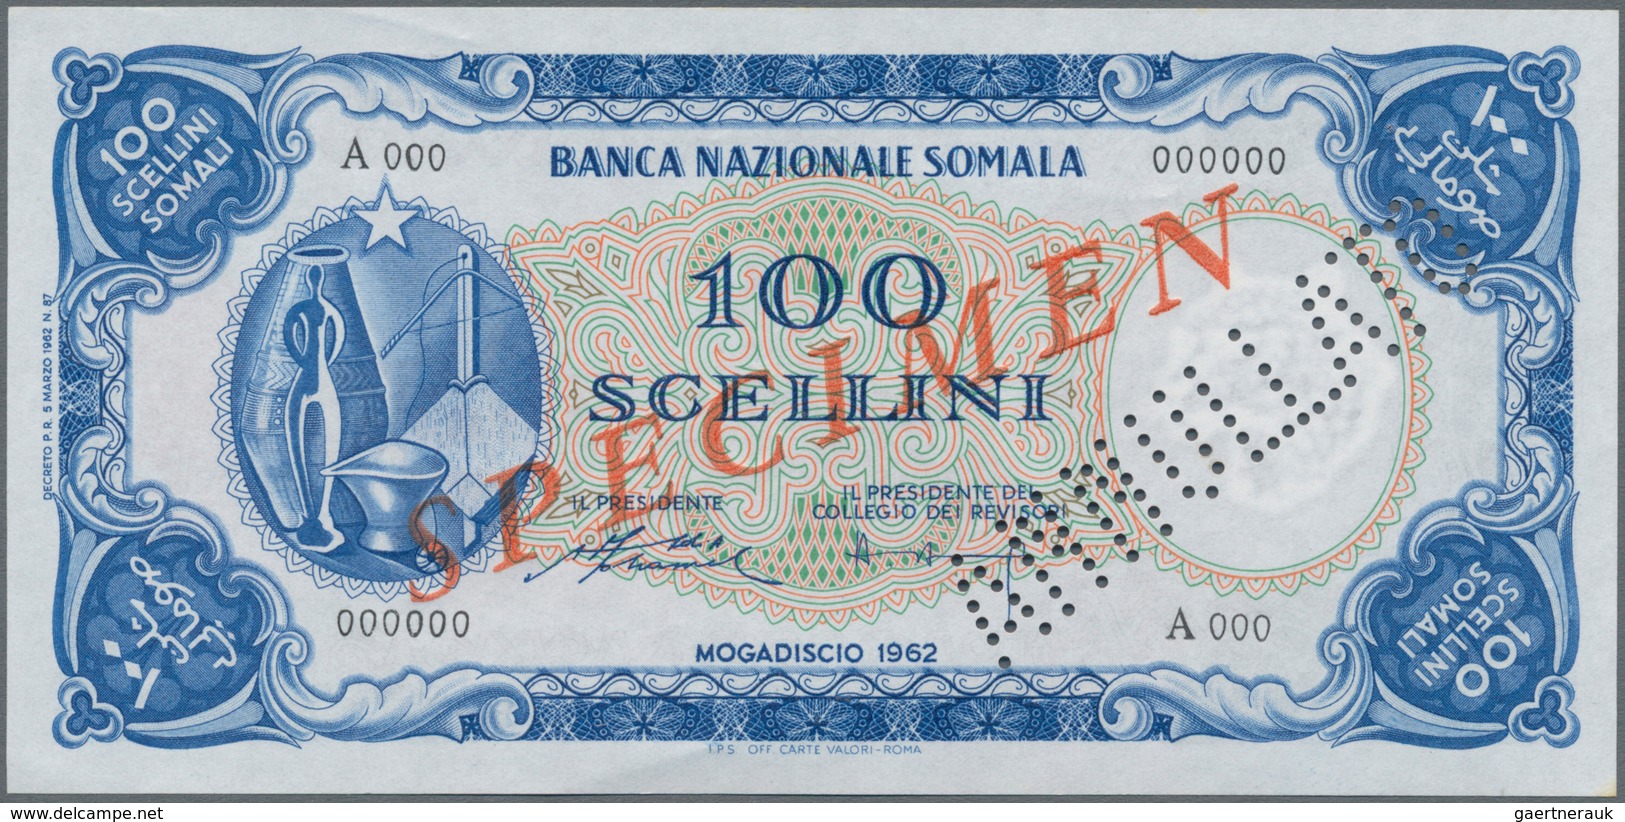 Somalia: Banca Nazionale Somala 100 Scellini 1962 SPECIMEN, P.4s In Perfect UNC Condition. - Somalia